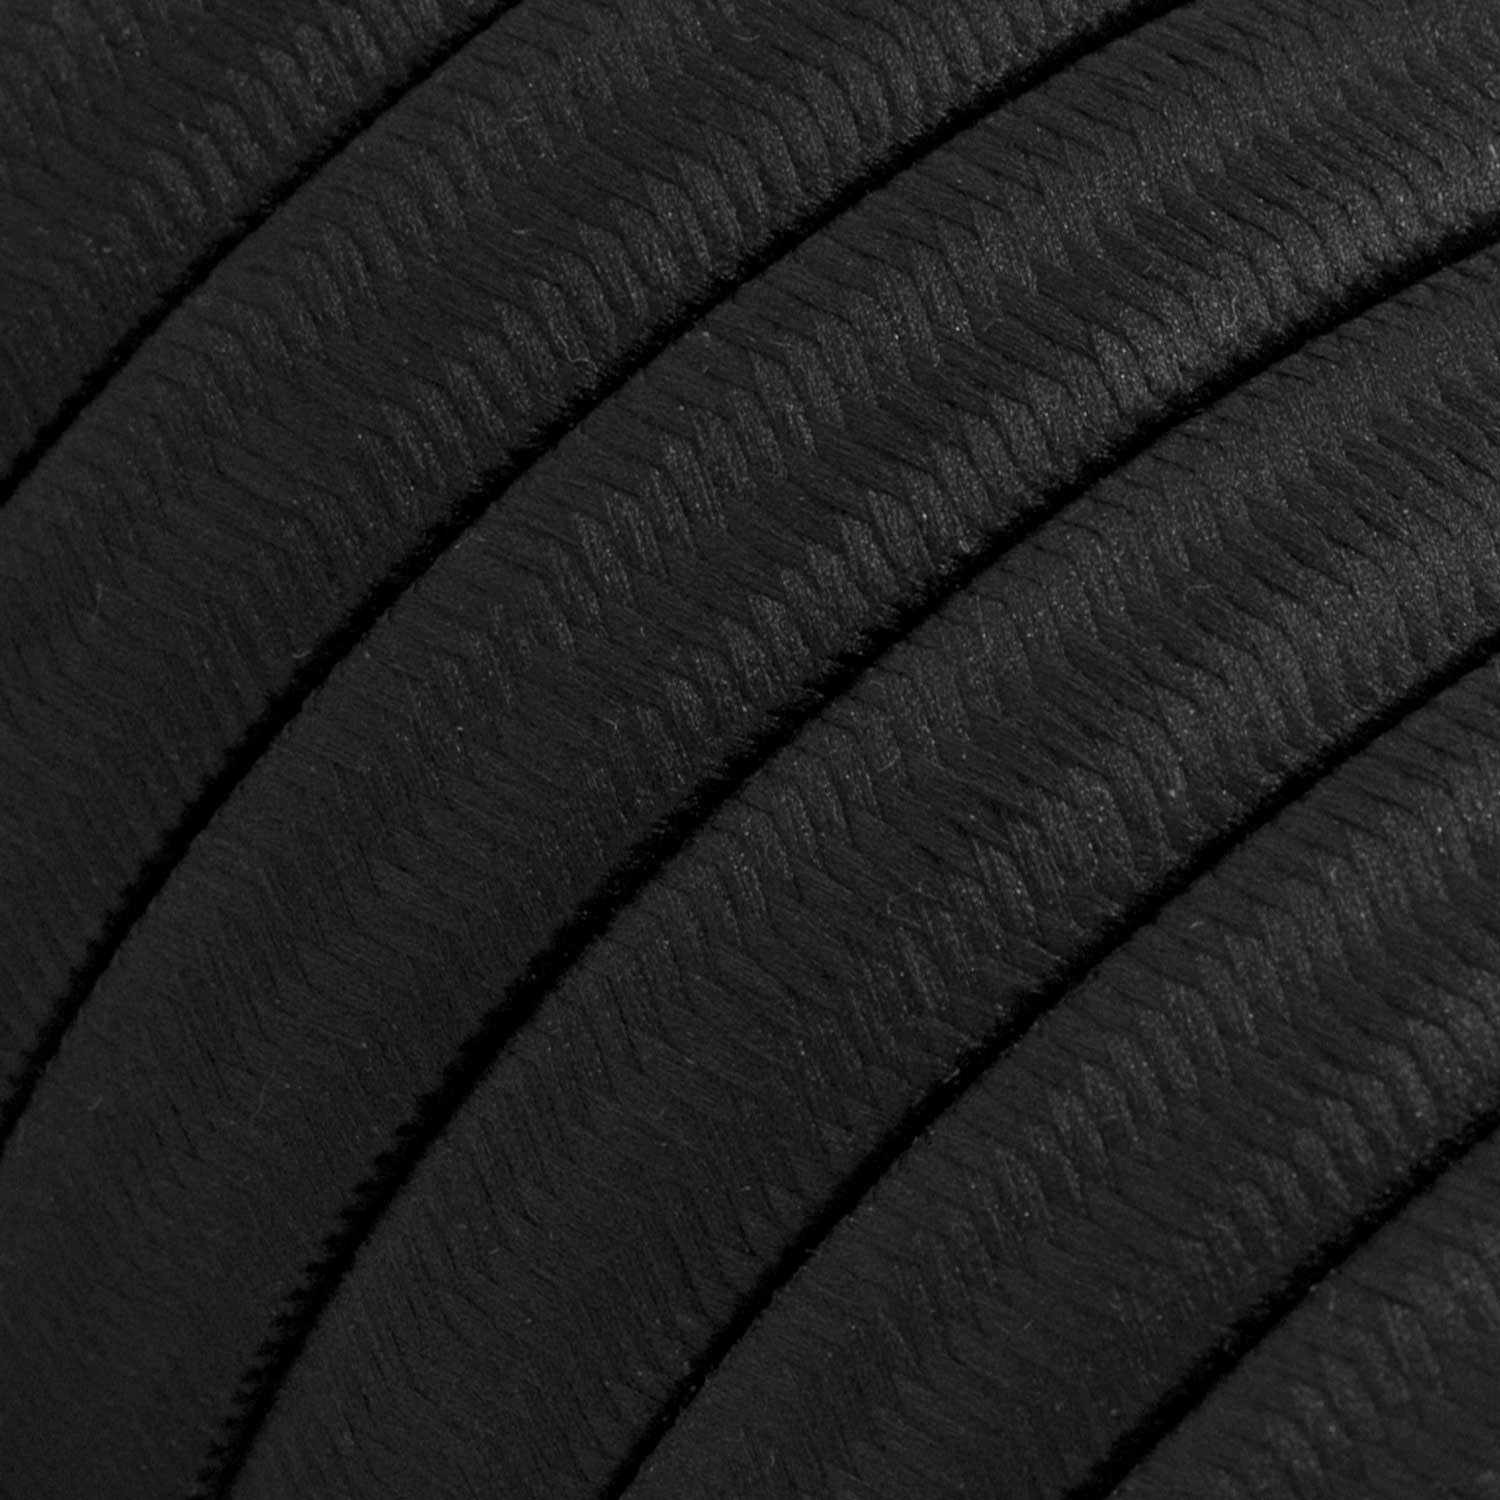 Kit Wiggle Filé System - con 3m cable textil guirnalda y 5 accesorios de madera pintados de negro